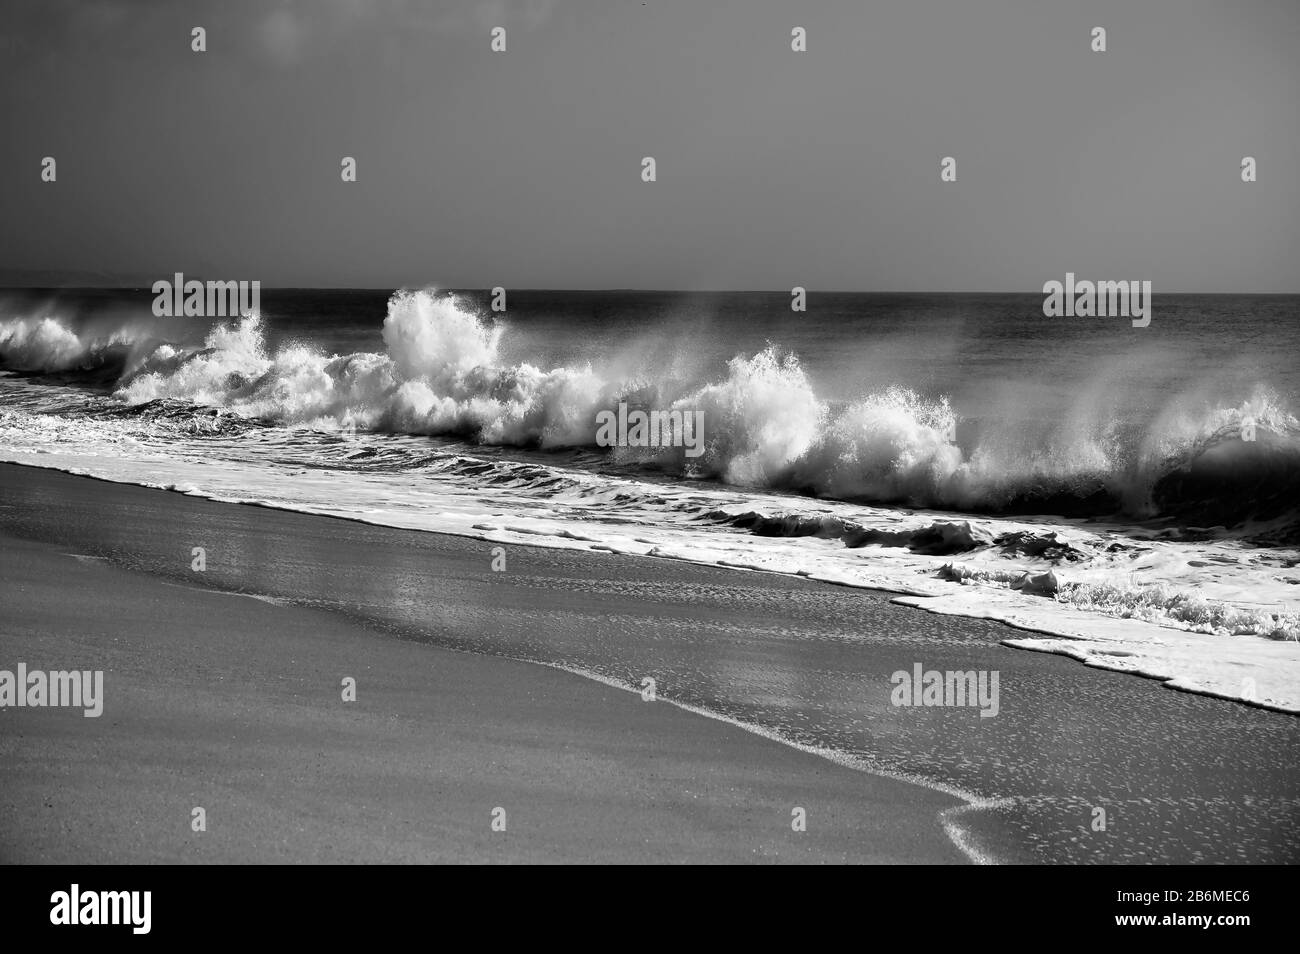 Vento attraverso le onde che si infrangono raggiungono la spiaggia. Fotografia in bianco e nero. Foto Stock